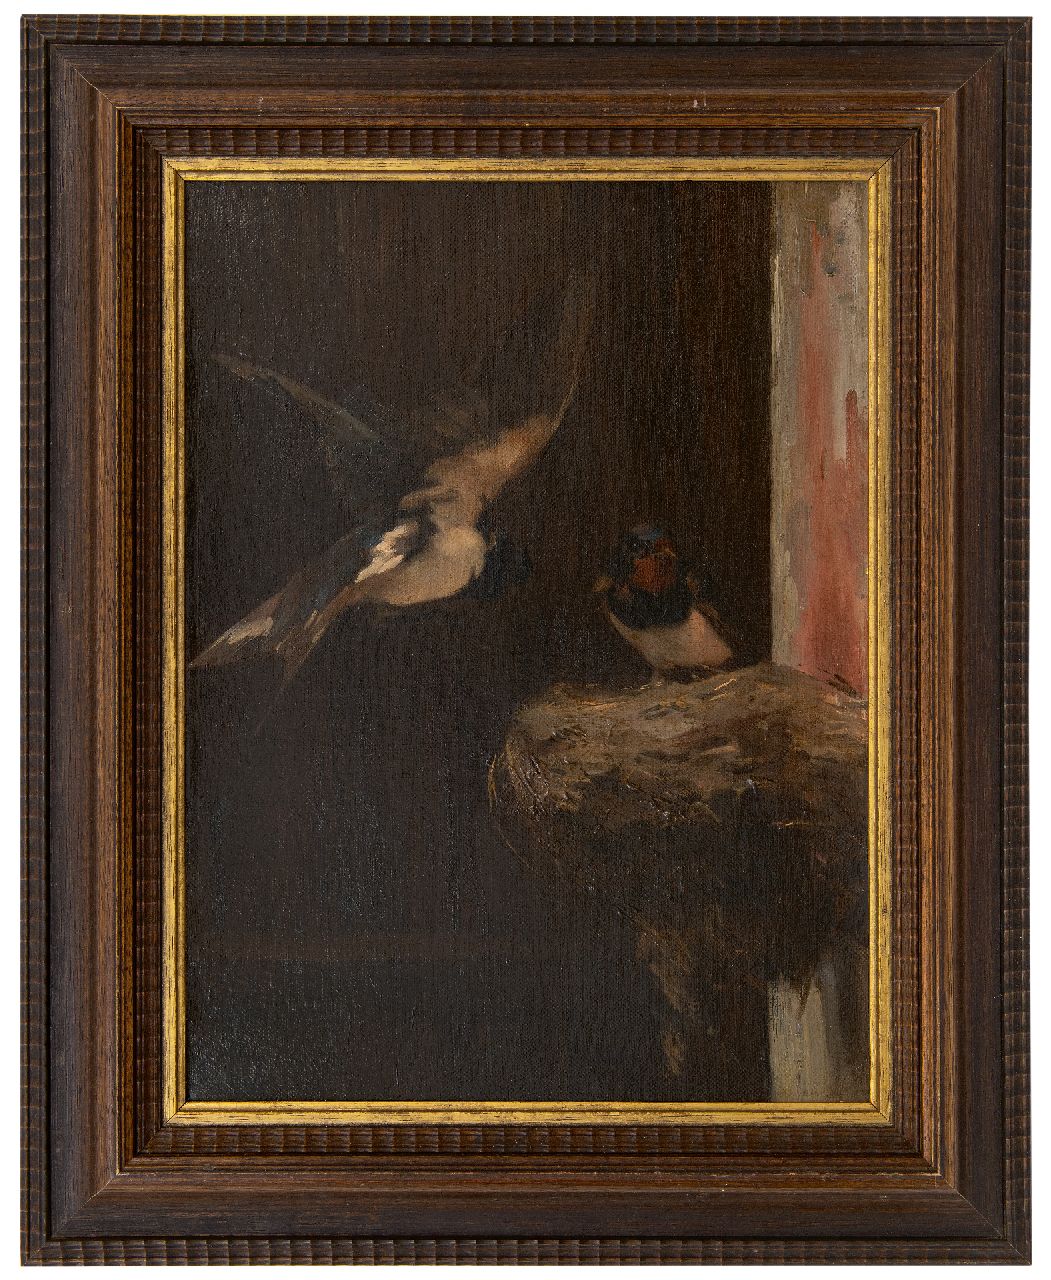 Stortenbeker C.S.  | Cornelis Samuel Stortenbeker, Nestelende zwaluwen, olieverf op doek 46,6 x 34,7 cm, gesigneerd linksonder met initialen